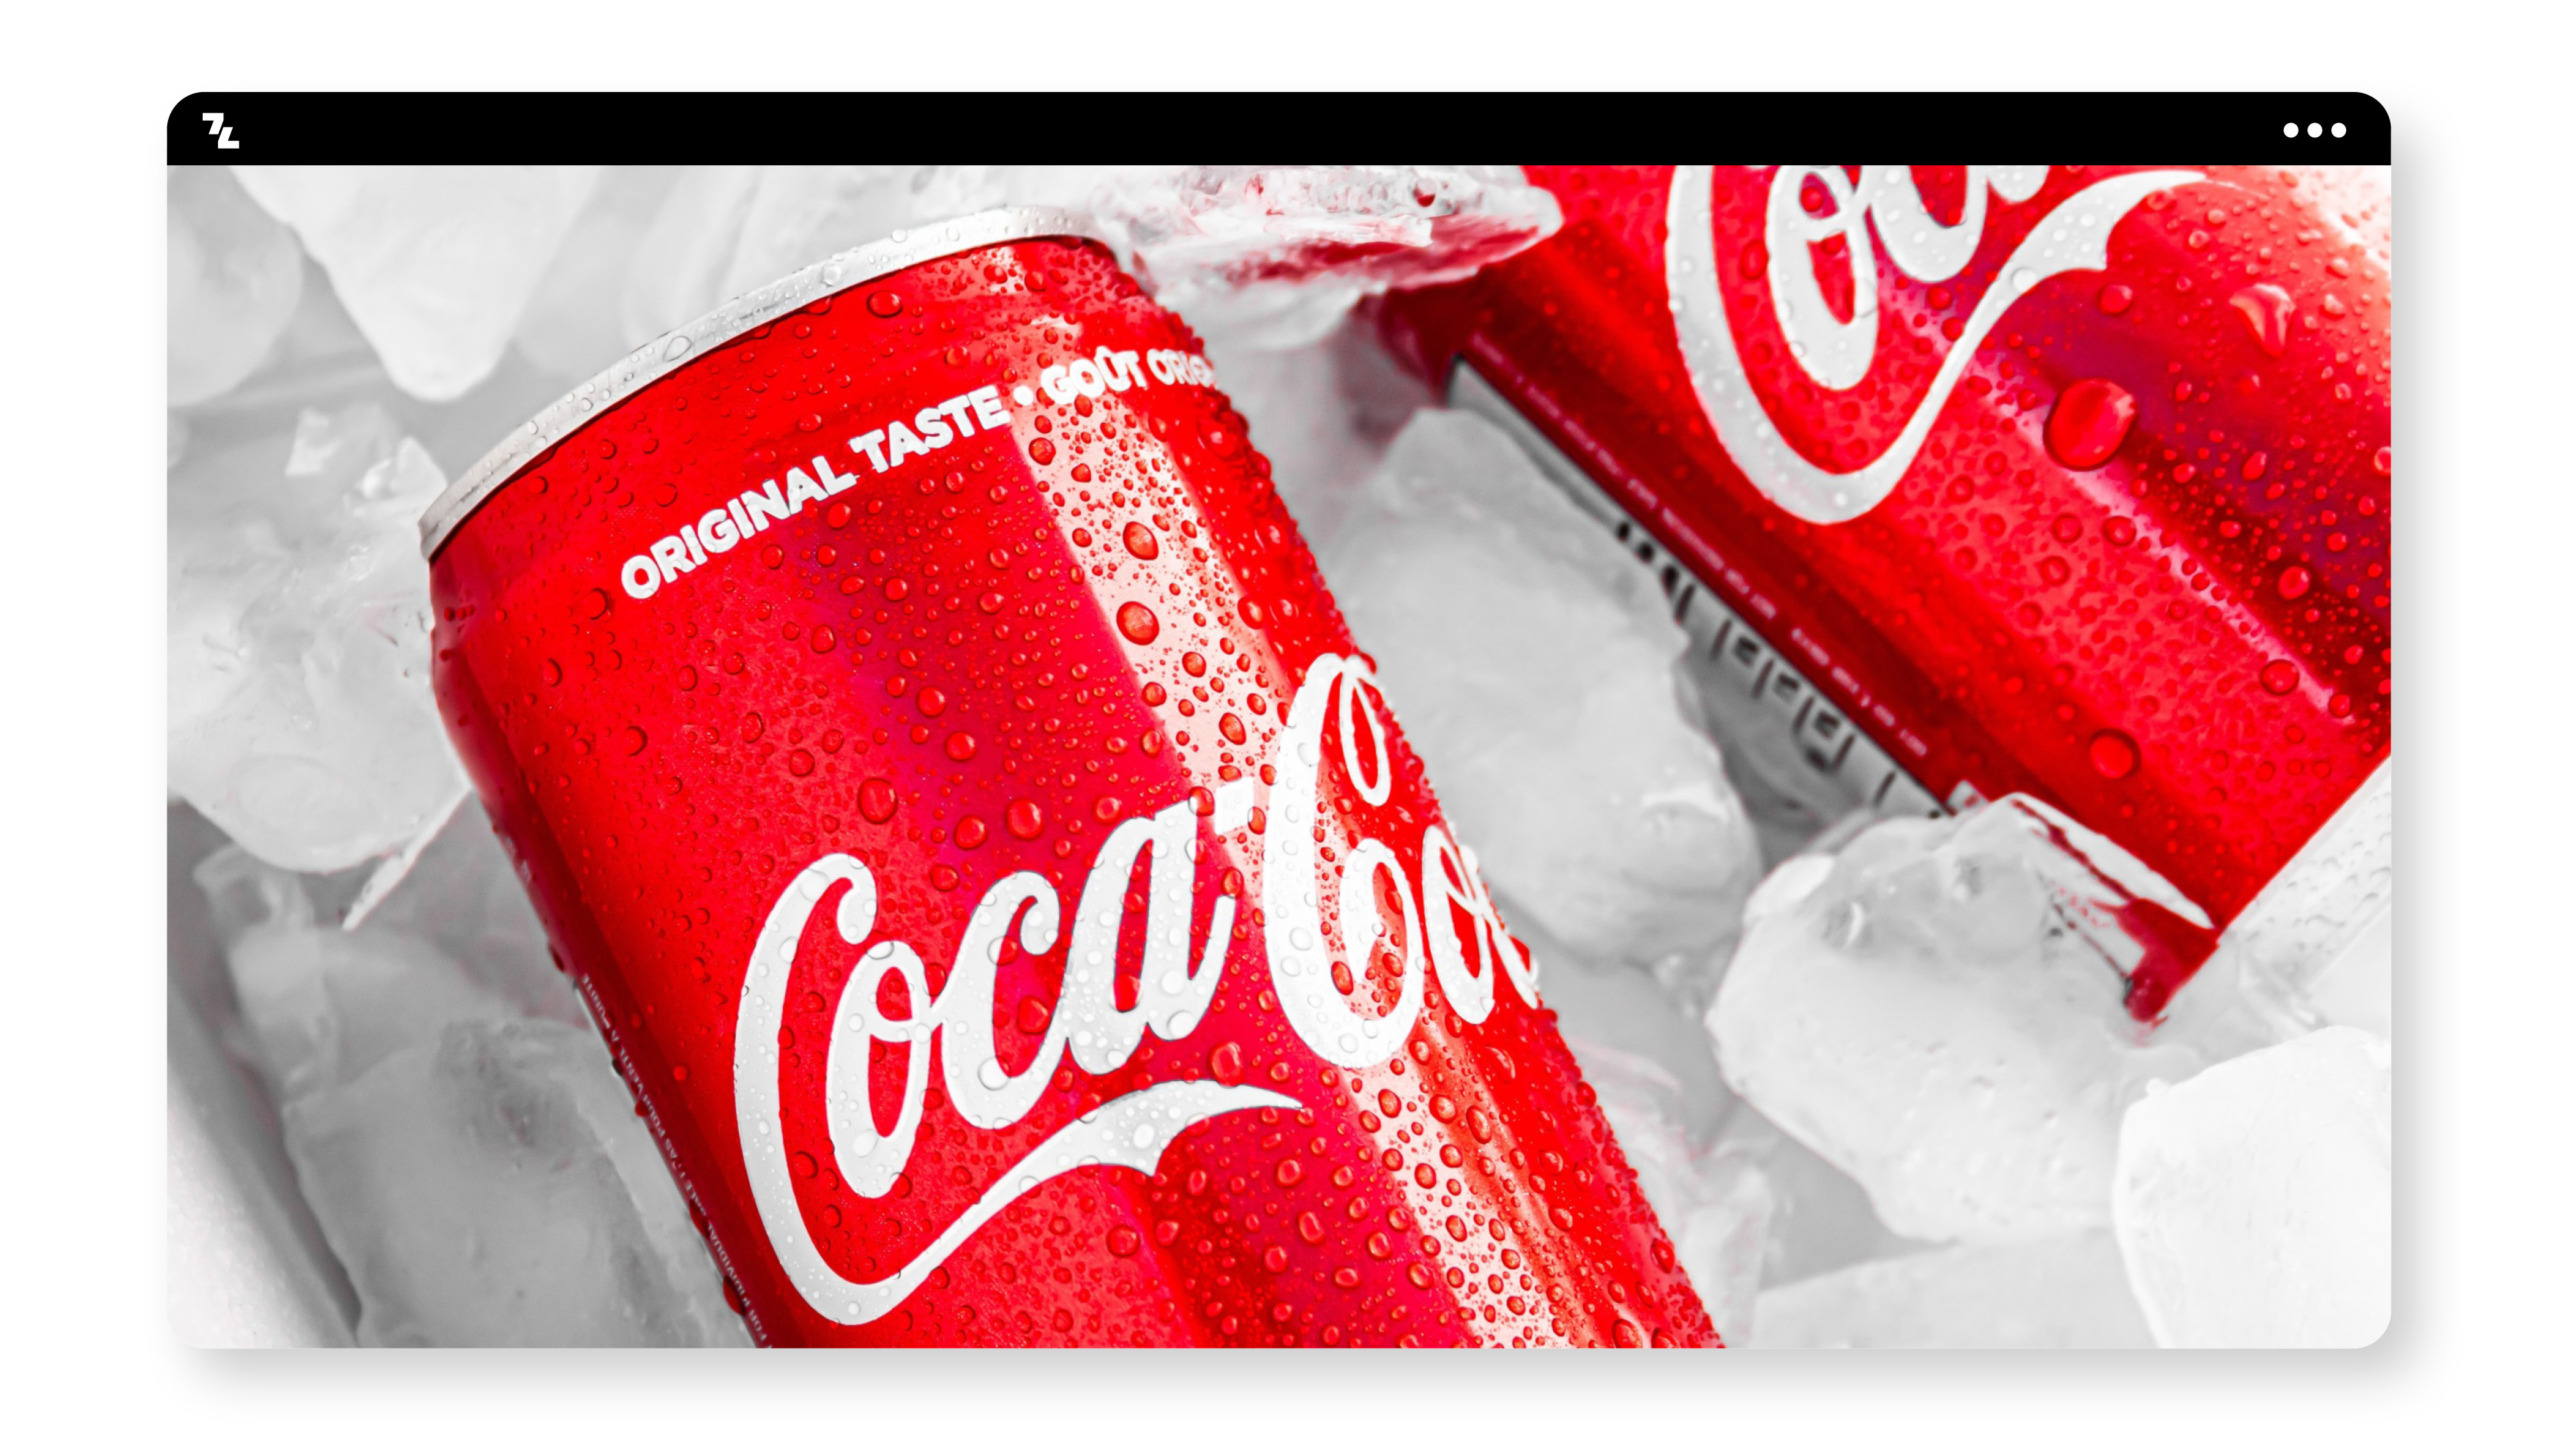 Zwei Dosen Coca Cola liegen auf Eis.